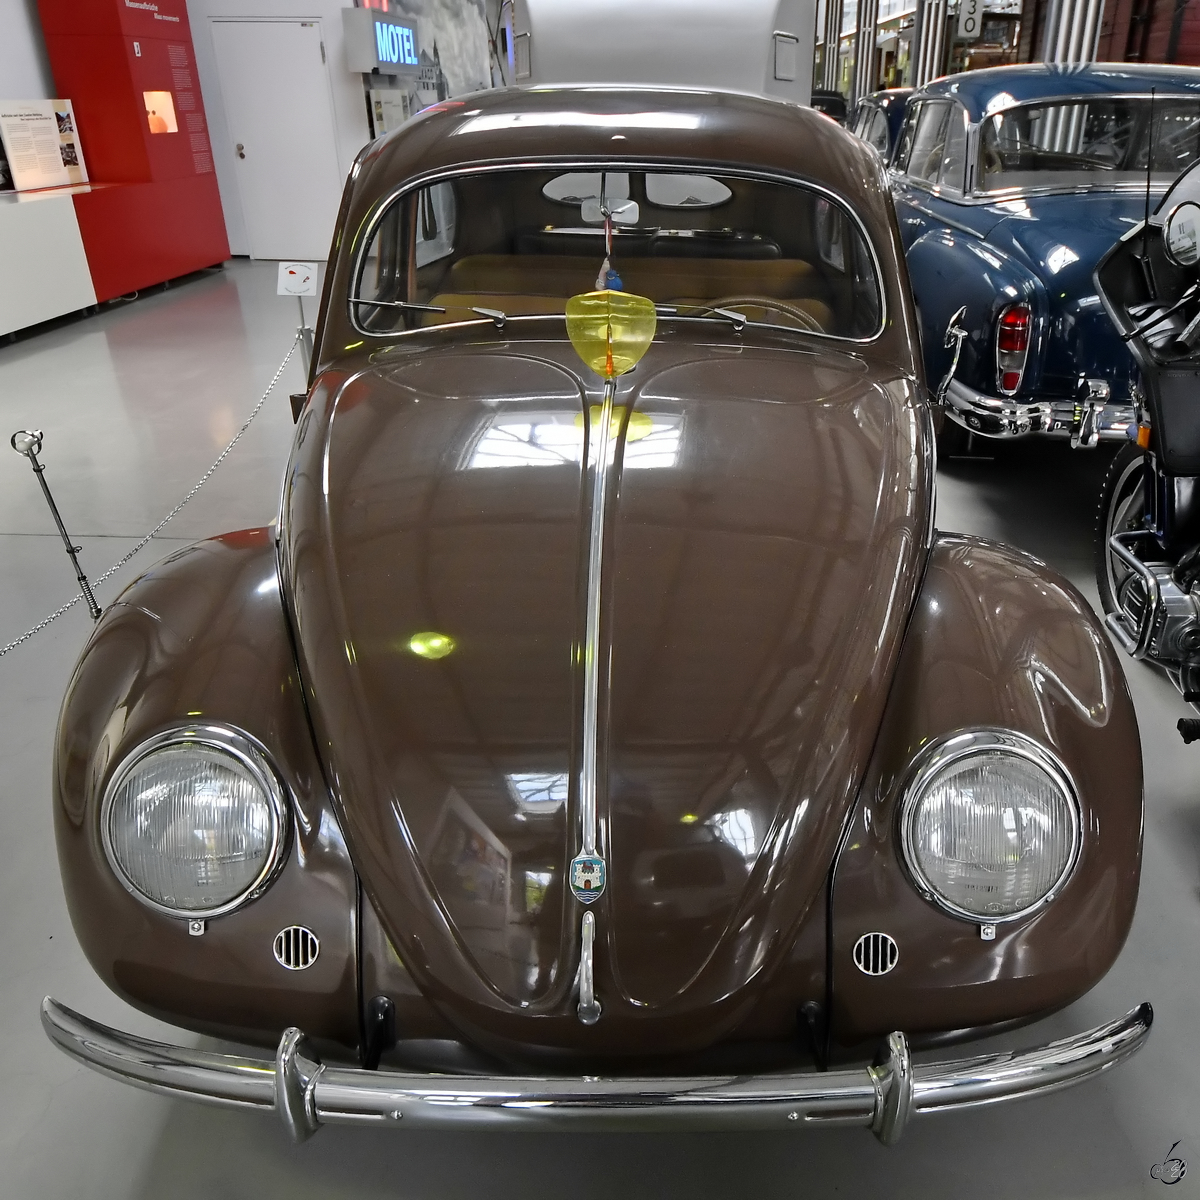 Eine VW Export Limousine von 1960 war Mitte August 2020 im Verkehrszentrum des Deutschen Museums in München ausgestellt.